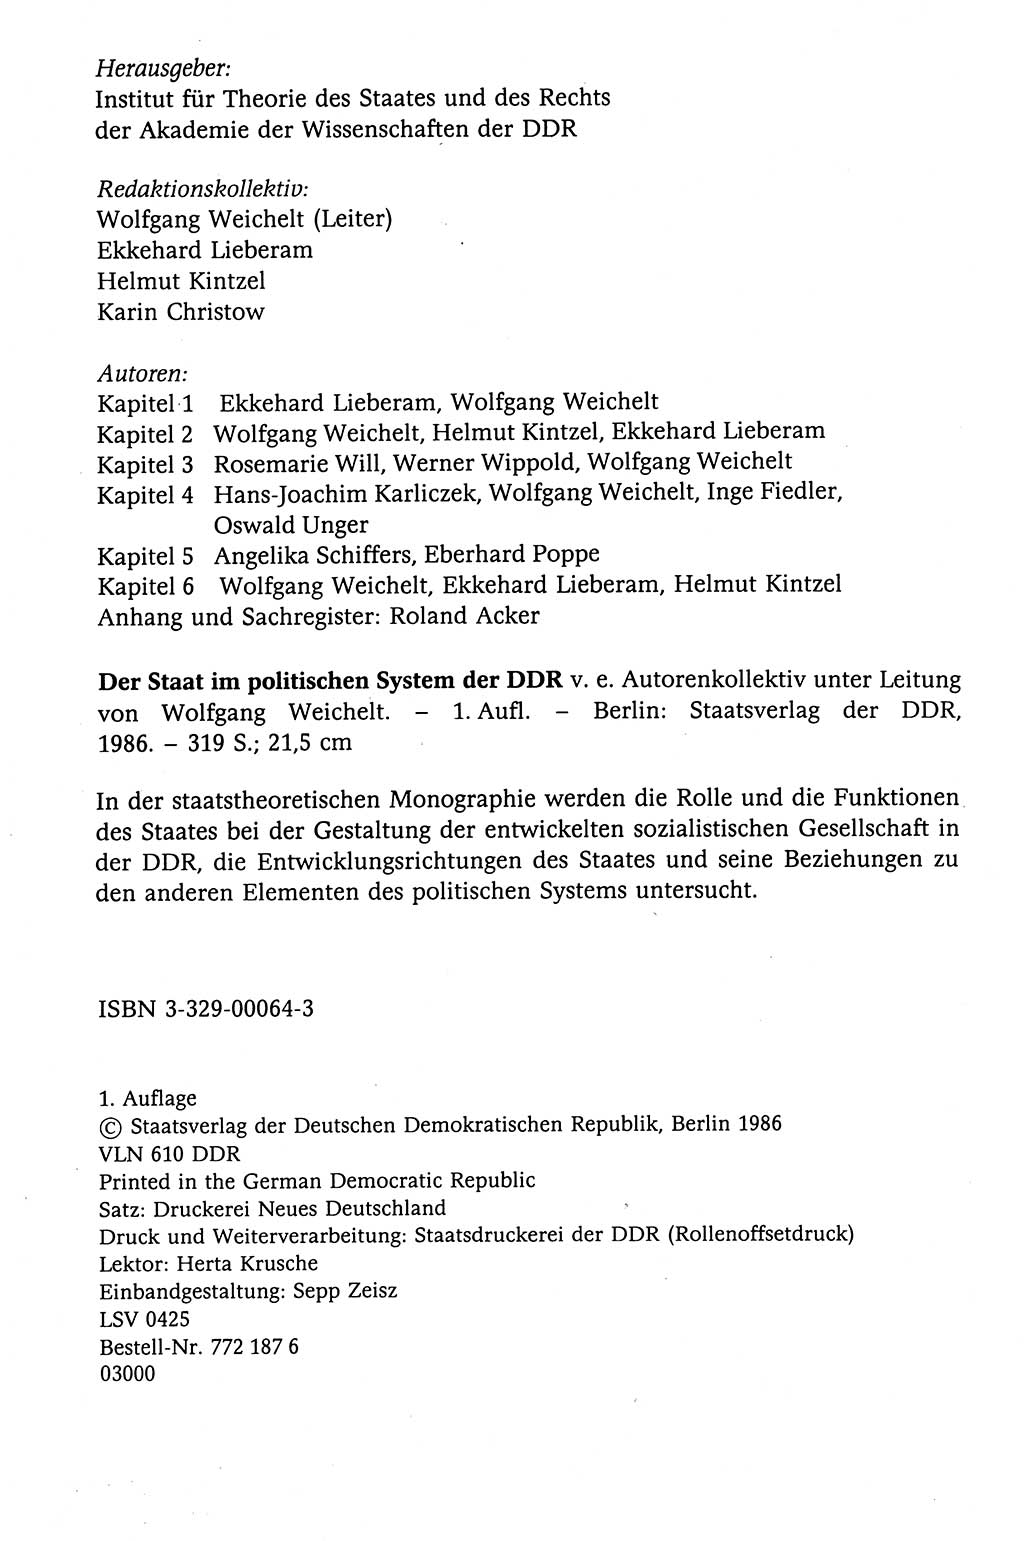 Der Staat im politischen System der DDR (Deutsche Demokratische Republik) 1986, Seite 4 (St. pol. Sys. DDR 1986, S. 4)